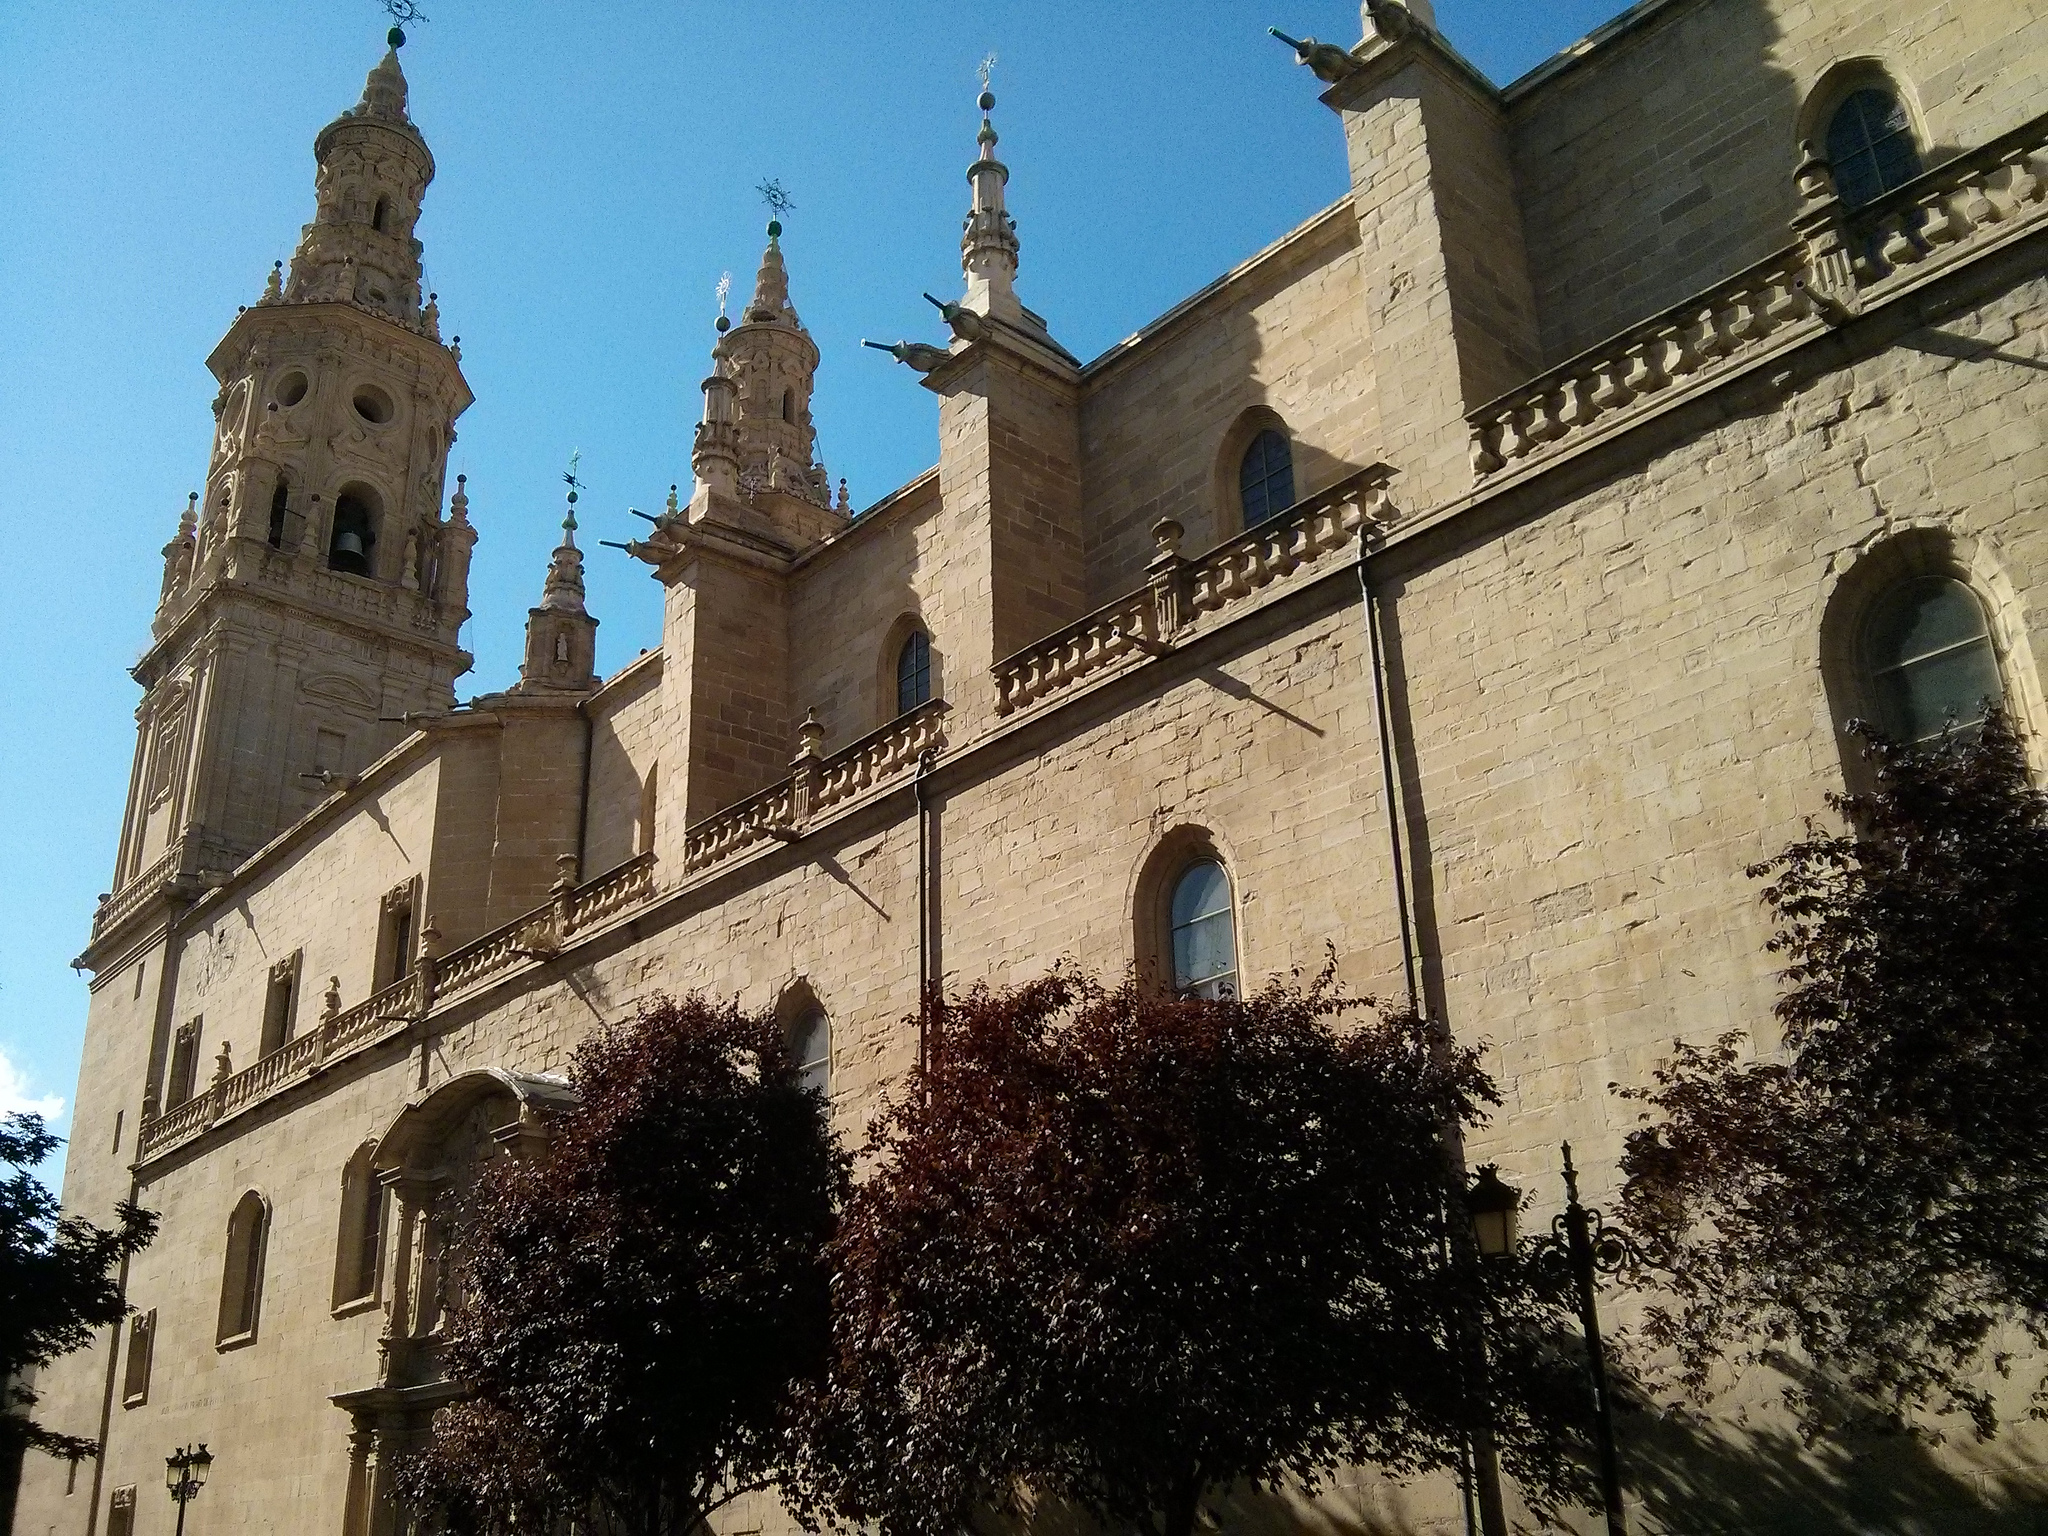 Fachada sur de la Concatedral de Santa María la Redonda (fotografía cedida en Flickr por Antonio Periago Miñarro bajo las siguientes condiciones)